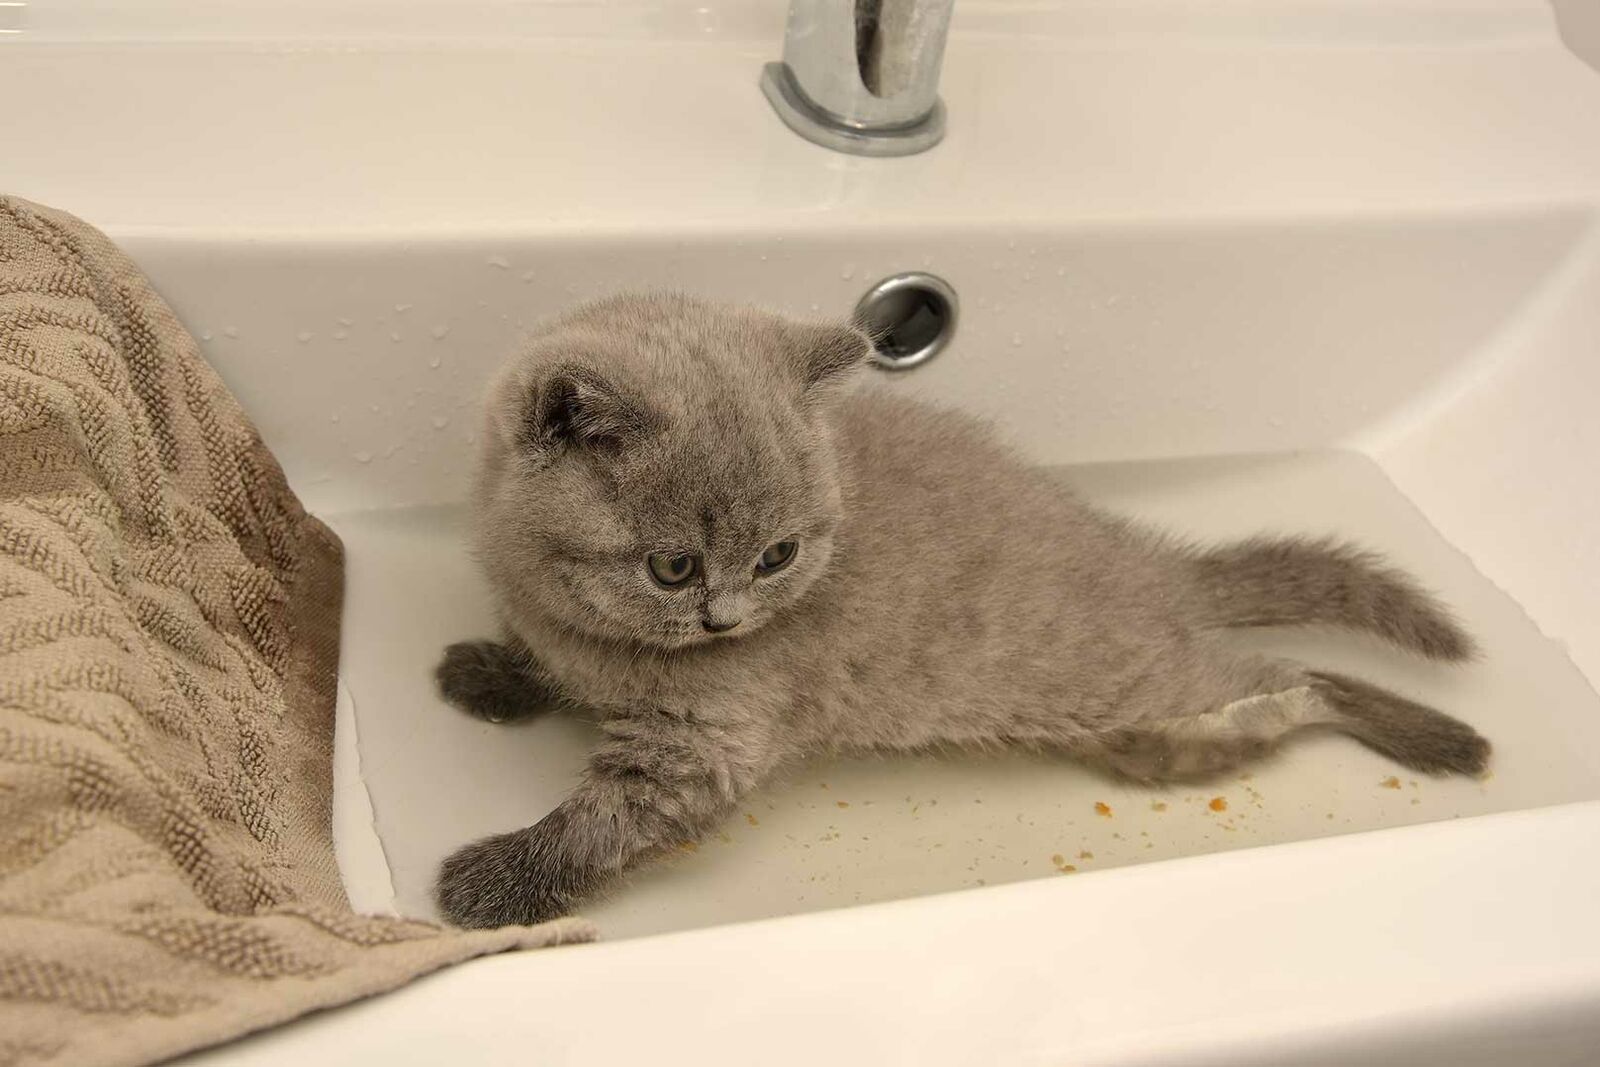 Ein Kitten wird in einem Waschbecken mit wenig Wasser gebadet.